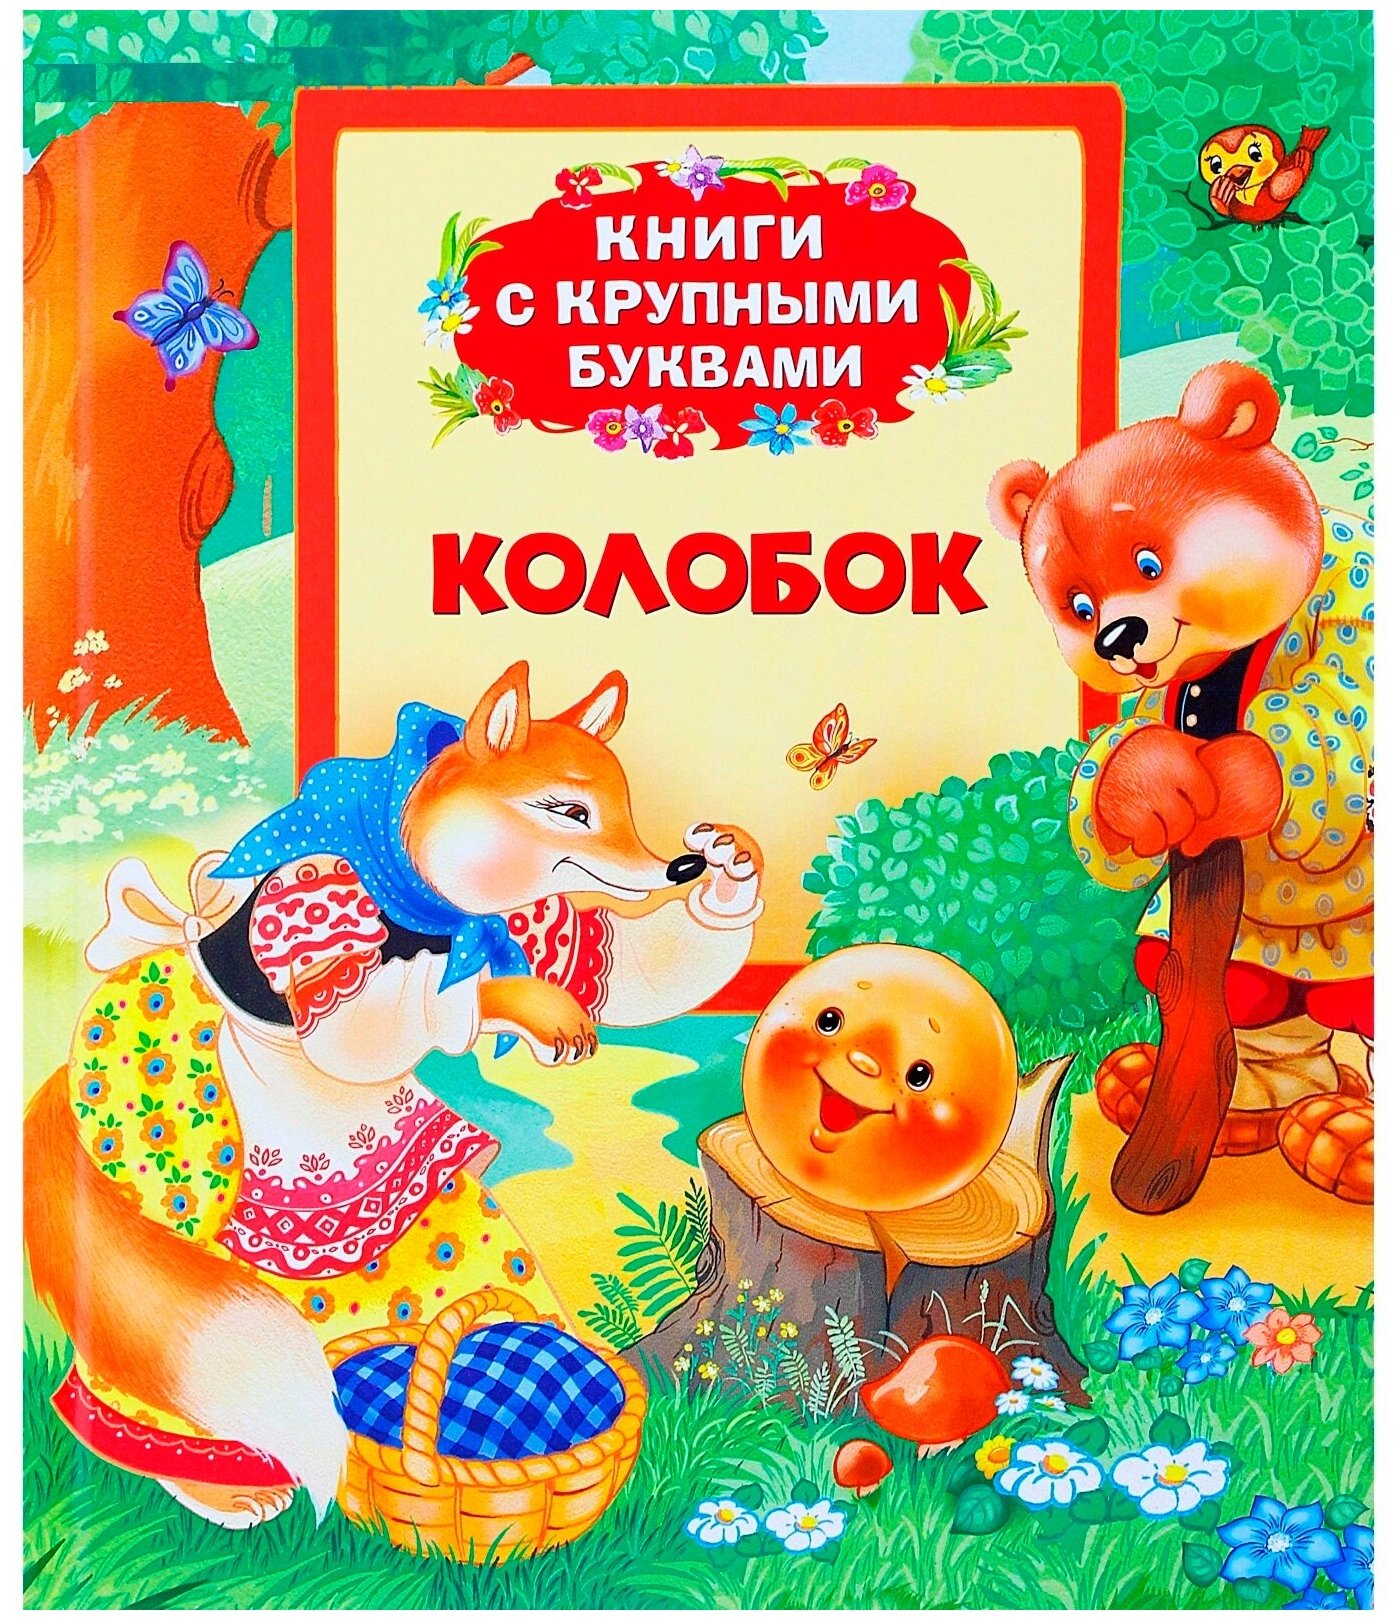 Книга с крупными буквами "Колобок", русские народные сказки